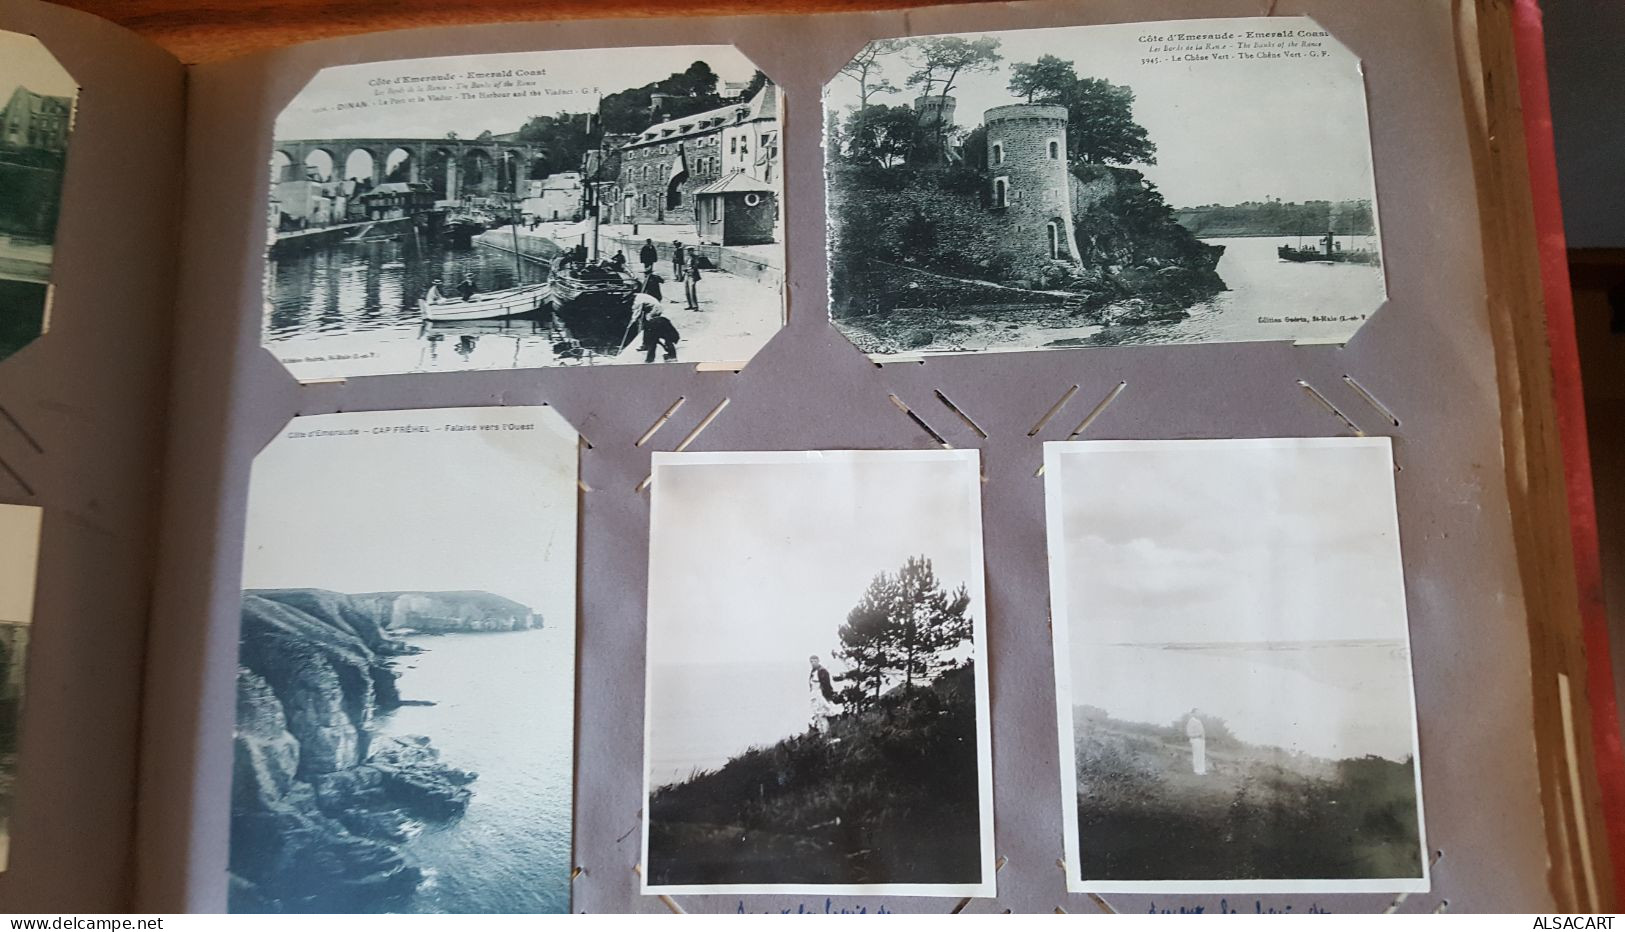 album de famille avec cartes postales , photos , et affiches , environs 300 pièces , divers departements , portugal , co